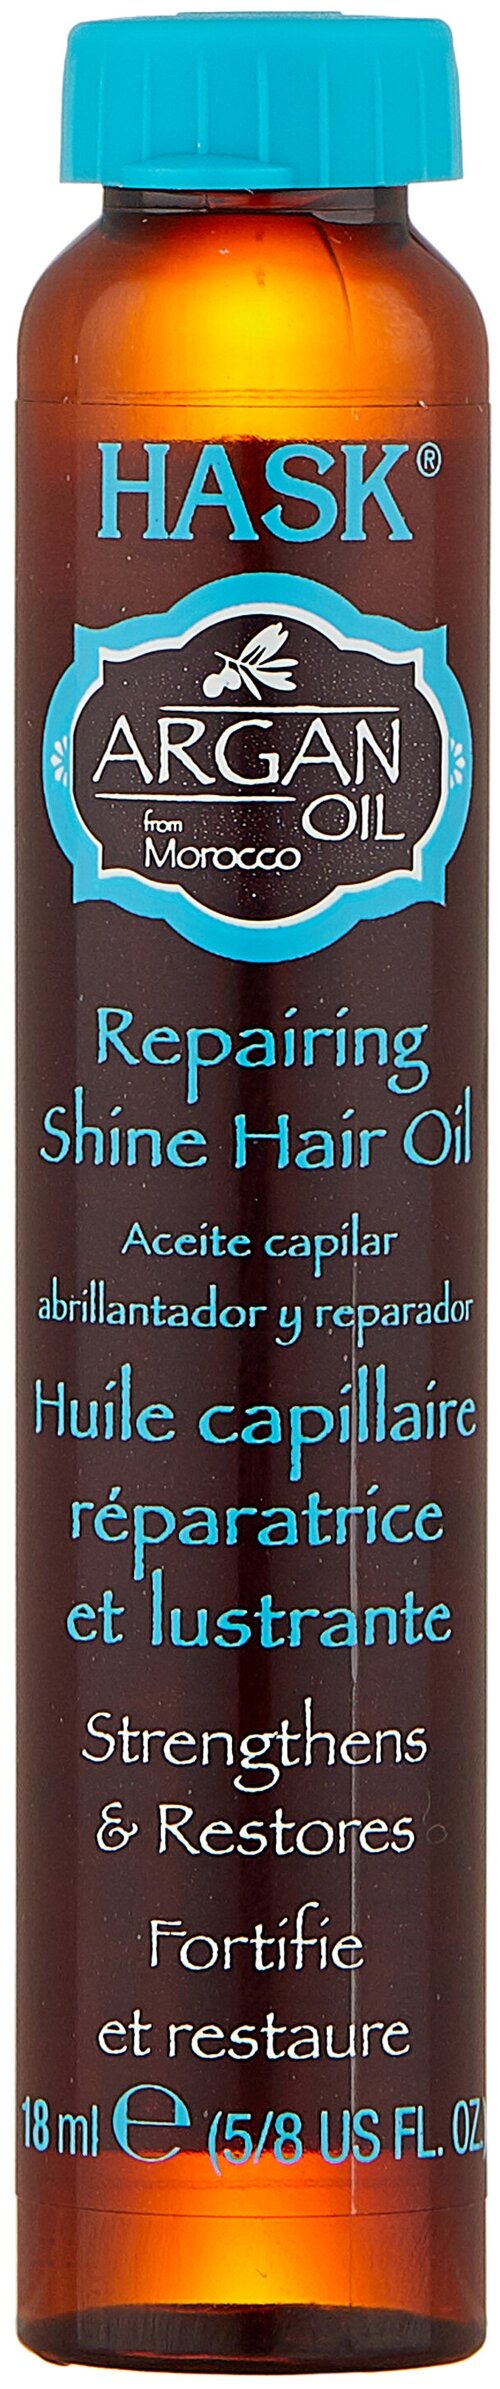 Hask Argan Oil Масло для восстановления и придания блеска волосам, 18 г, 18 мл, бутылка